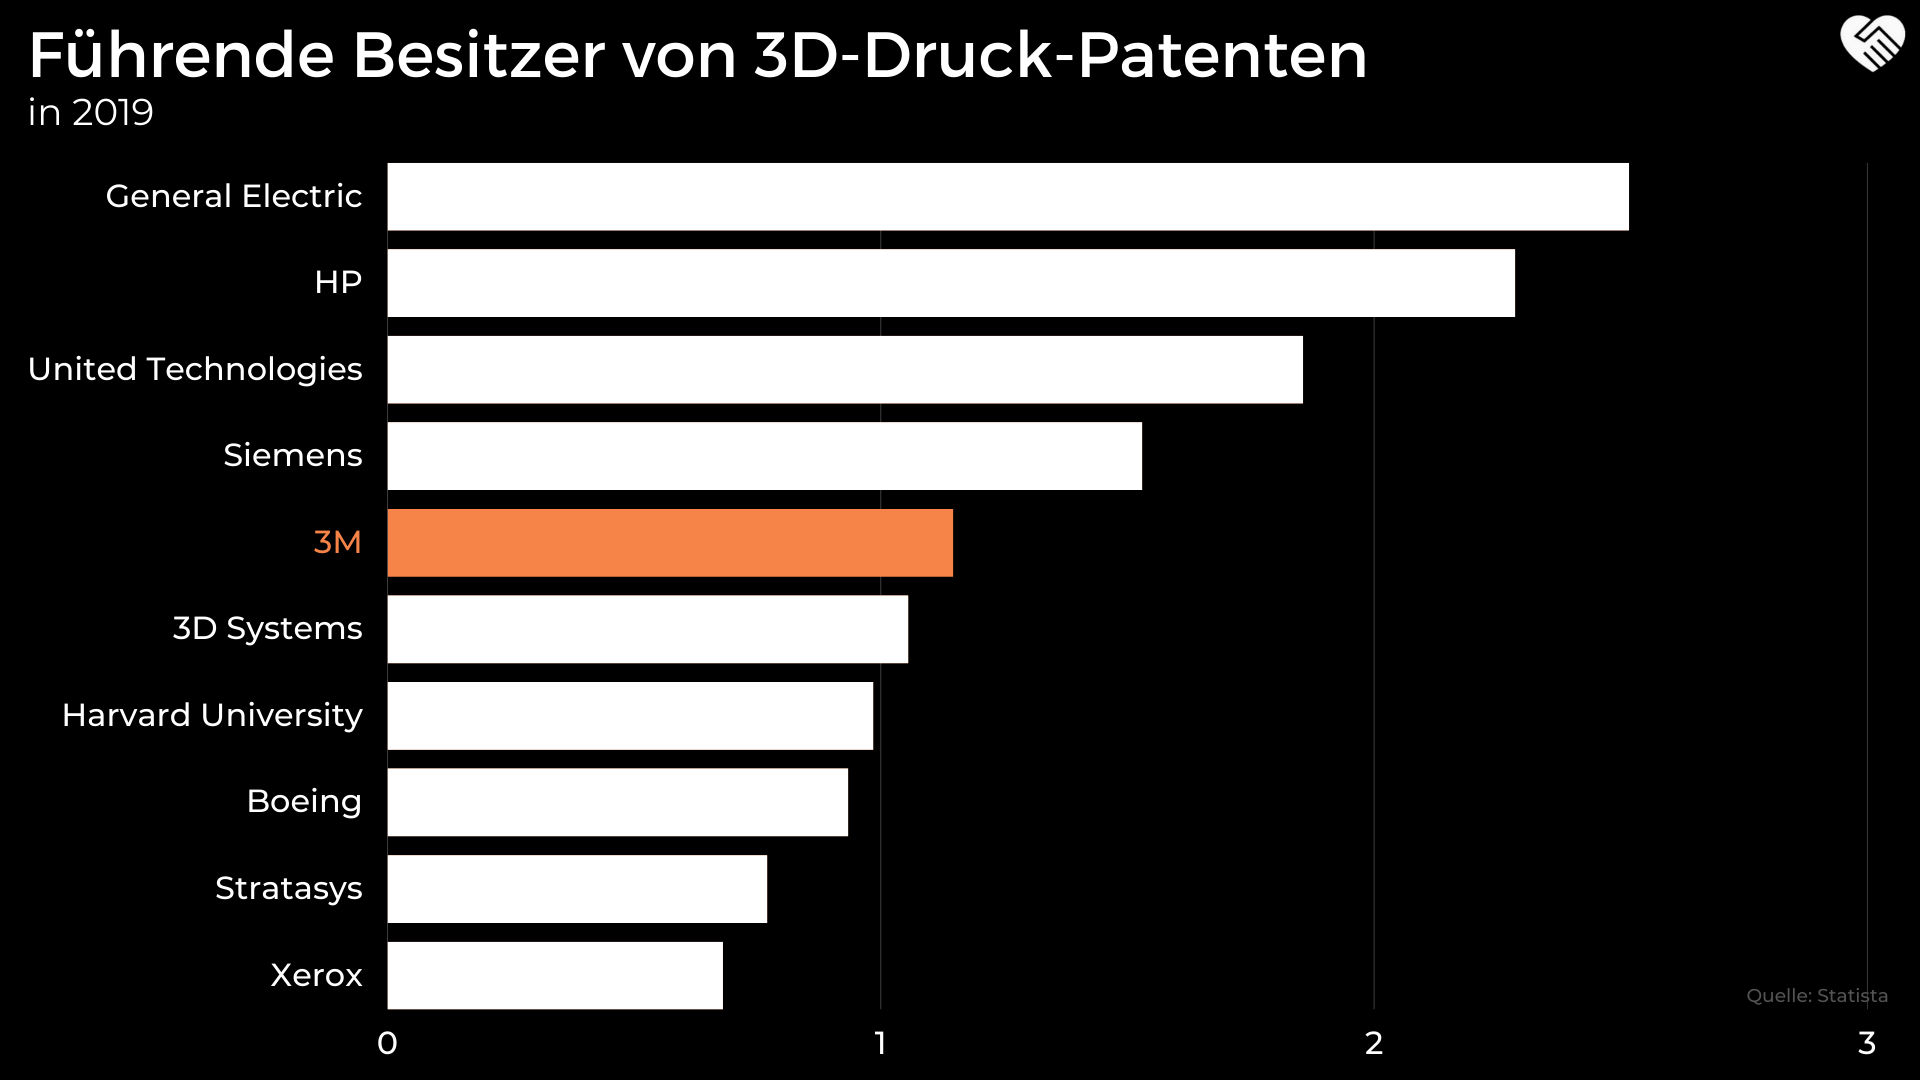 Führende Besitzer von 3D-Druck-Patenten